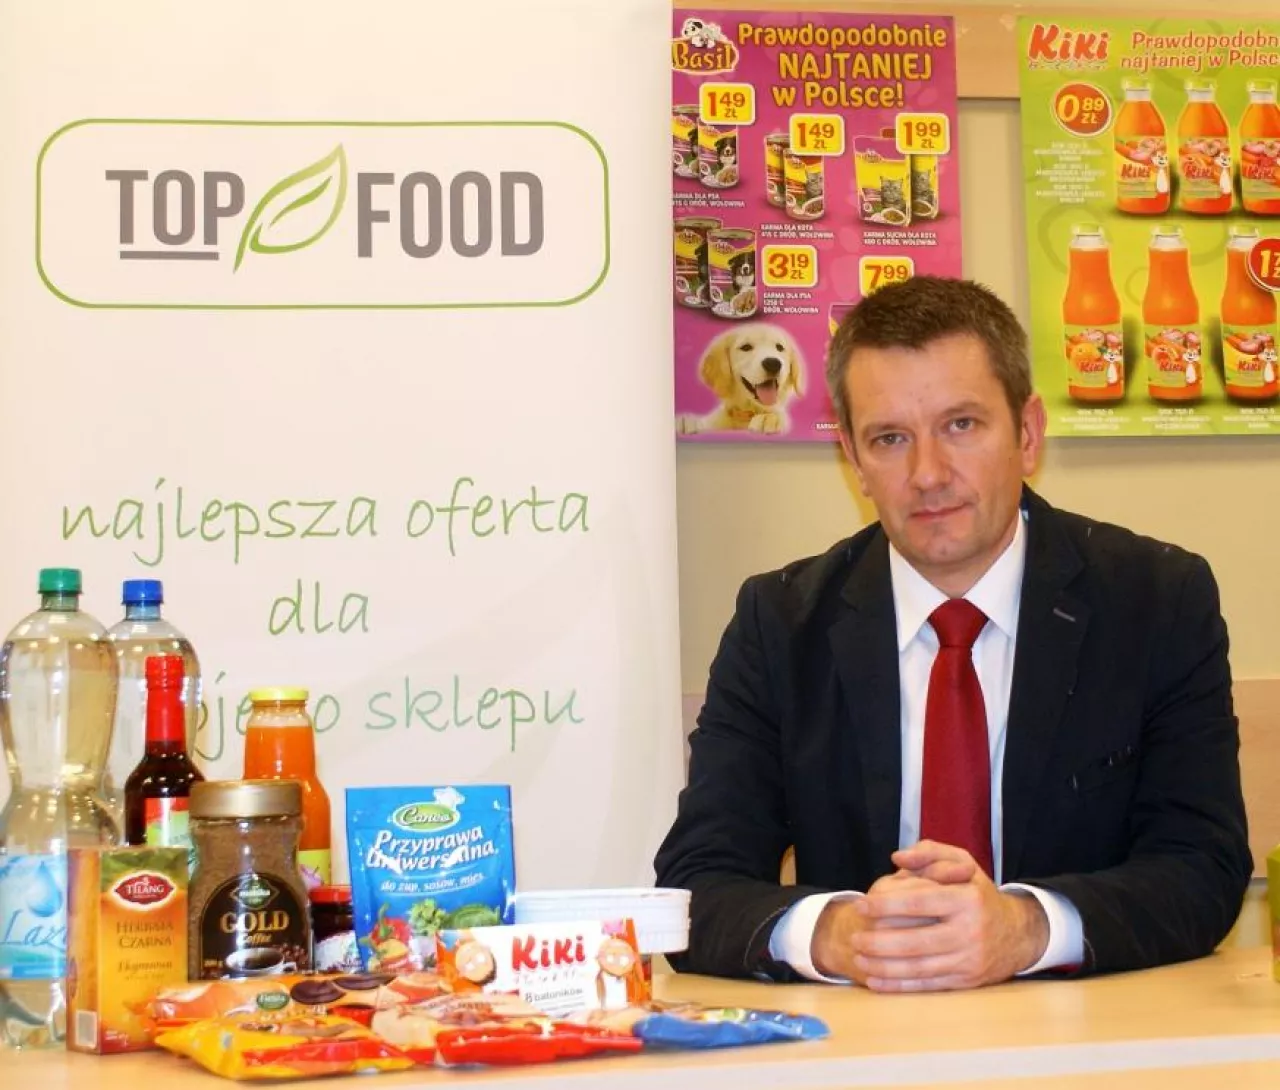 – Oferujemy prawie 380 produktów: 150 w ramach  linii ekonomicznej, 210 ze średniej półki cenowej oraz 20 nabiałowych – wylicza Zbigniew Rajca, prezes  firmy Top Food ()